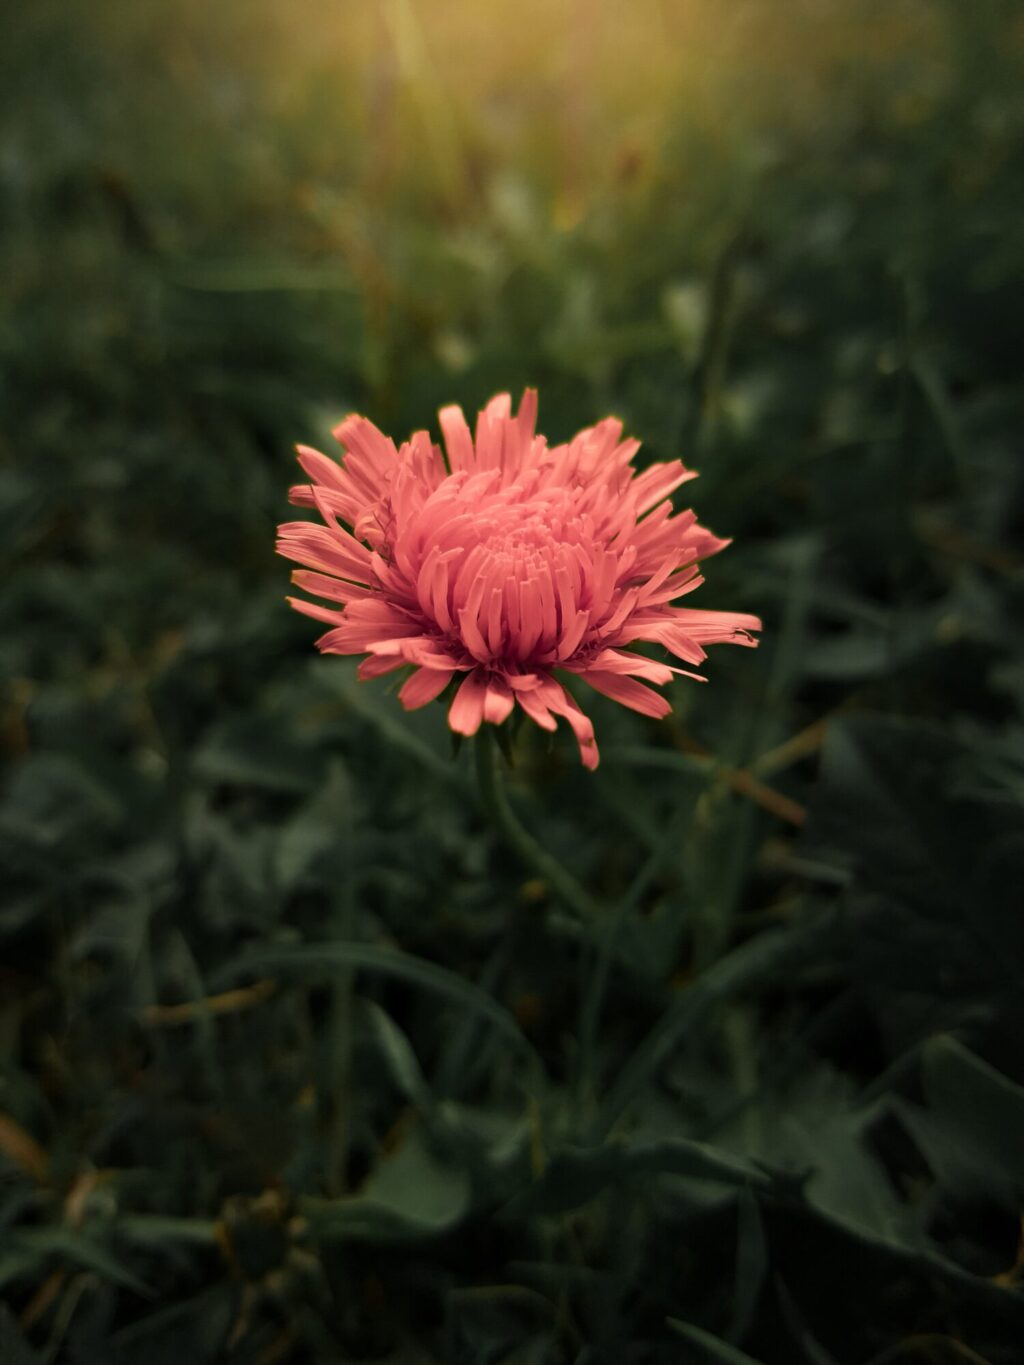 En blomst med kraftig rosa farge som blir fanget av lyset